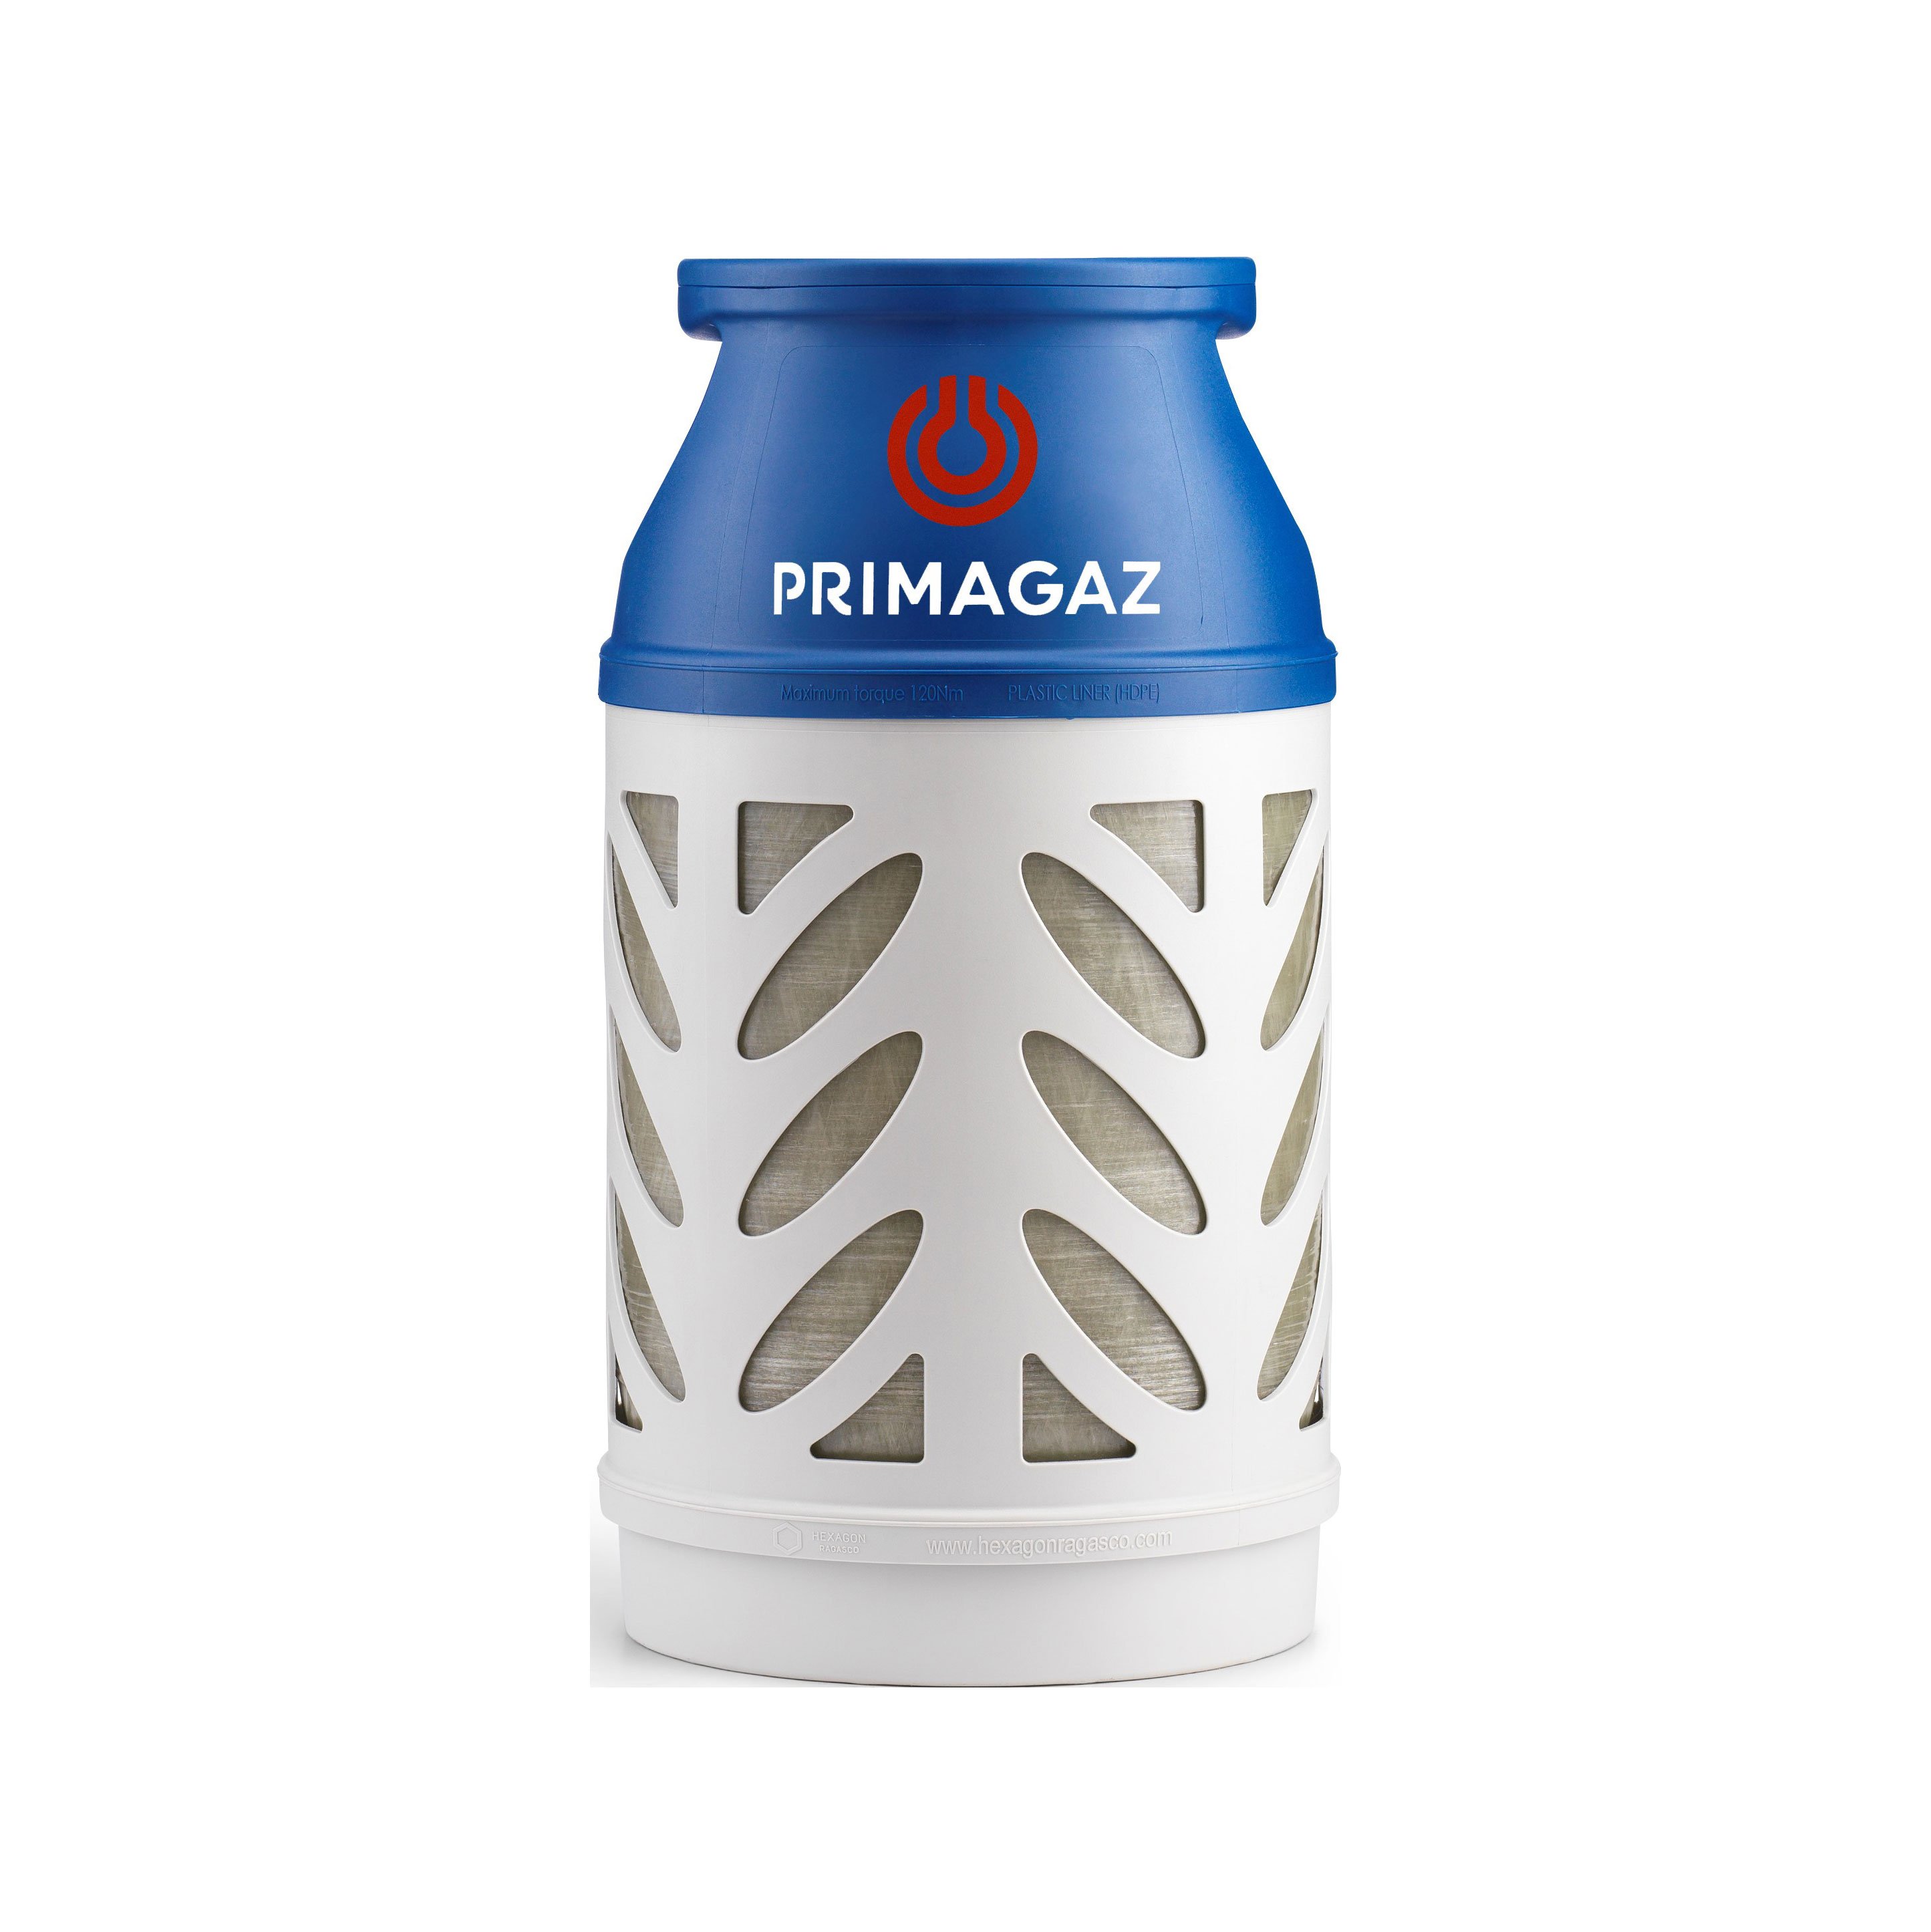 Billiga Gasolfyllning Primagaz PK10 - Säljs endast i butik online på nätet